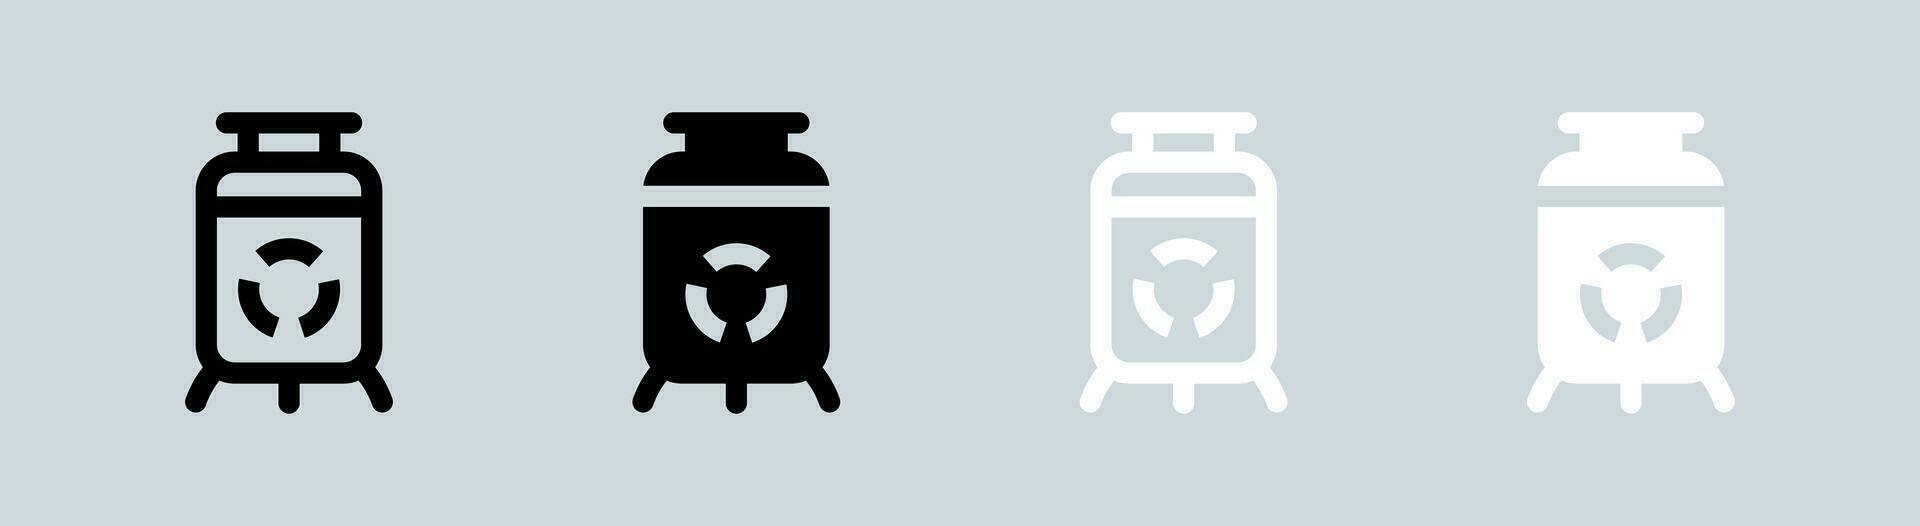 nuklear Symbol einstellen im schwarz und Weiß. atomar Energie Zeichen Vektor Illustration.